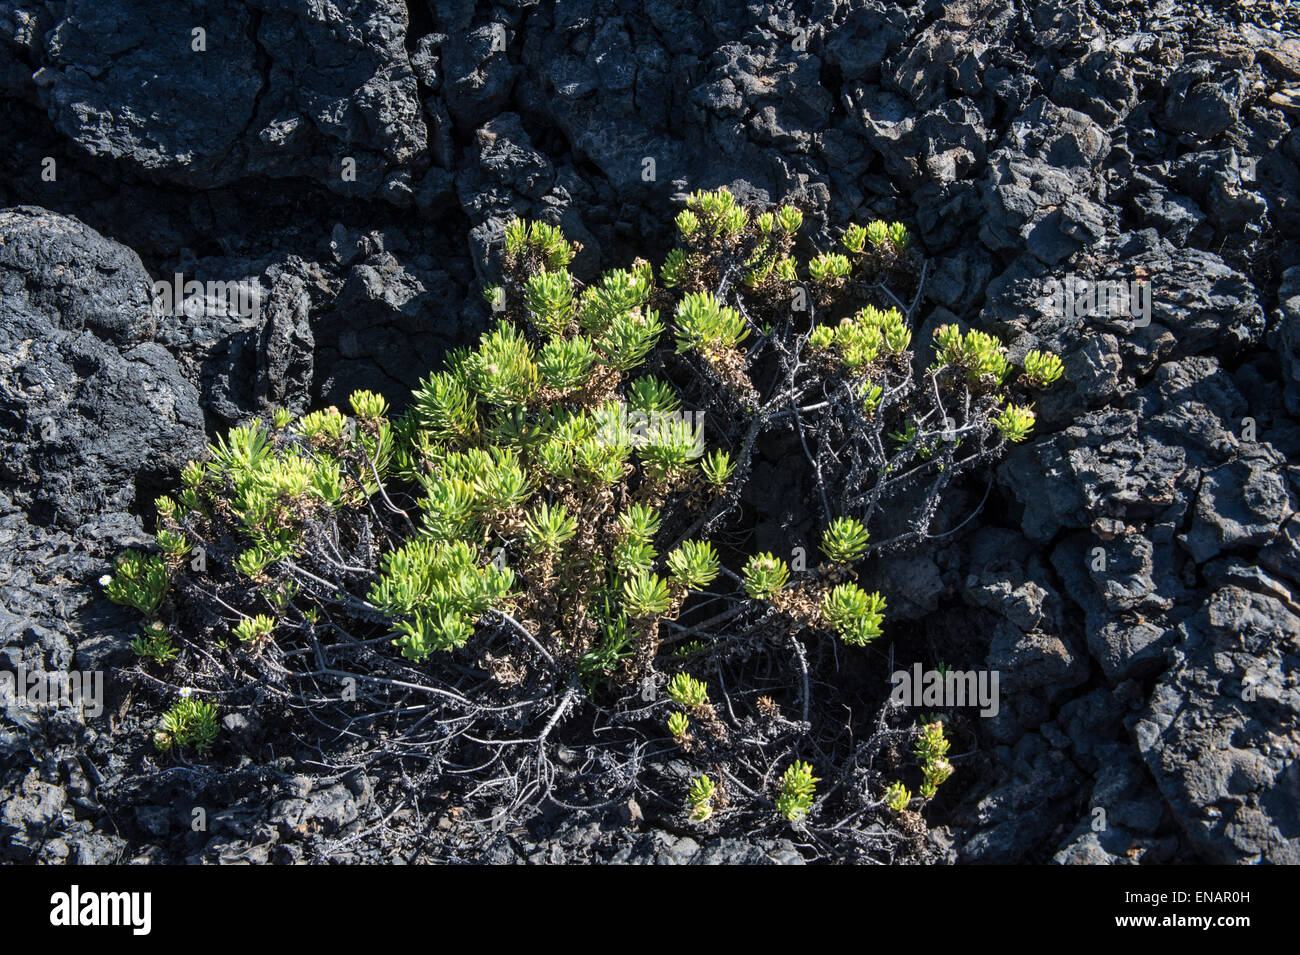 De plus en plus de végétation sur les roches de lave, Punta Morena, Isabela, l'île de Galapagos, Equateur, Site du patrimoine mondial de l'UNESCO Banque D'Images